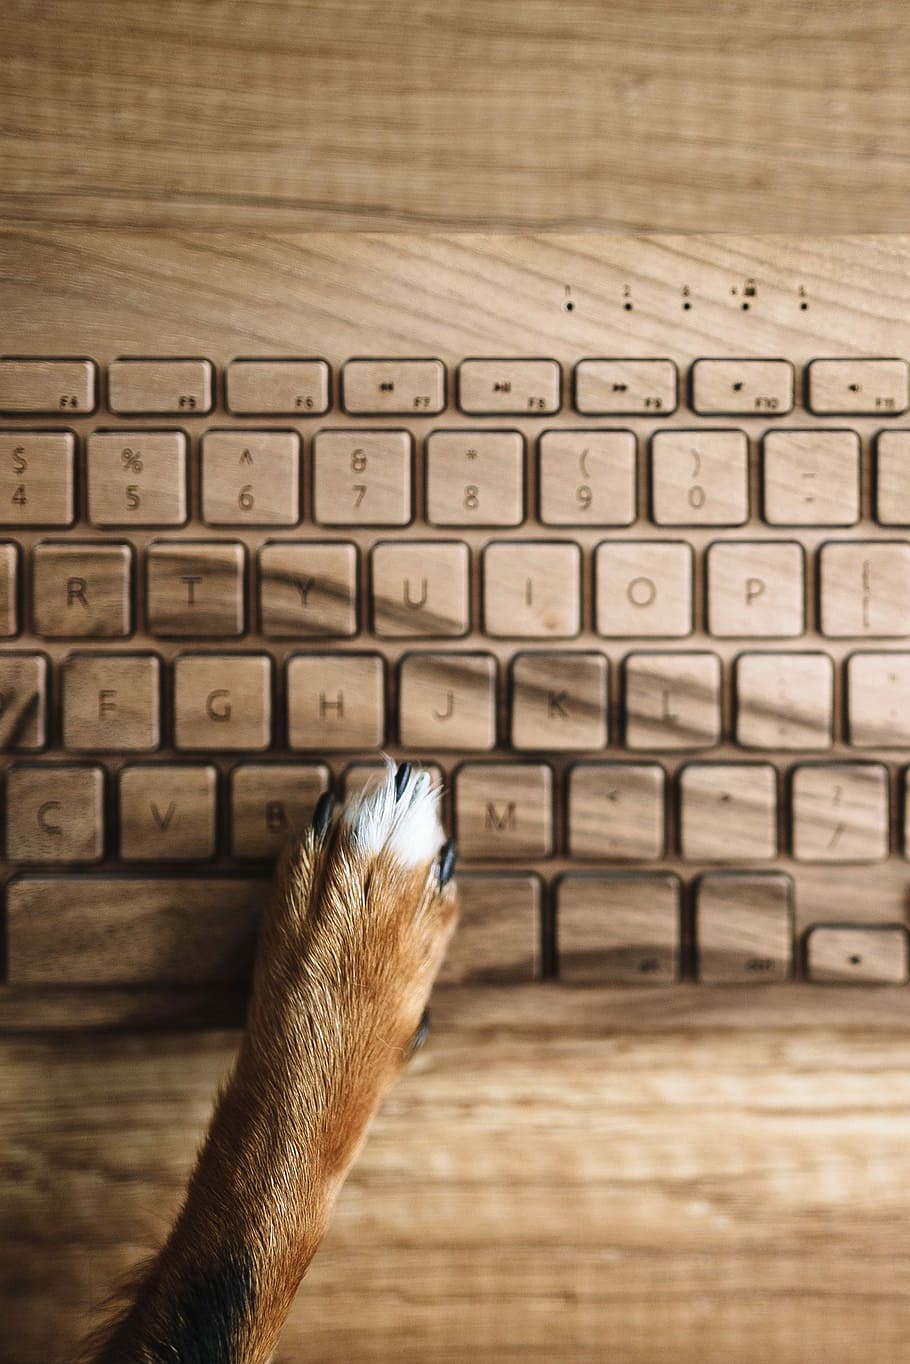 pata de perro, madera, teclado, Perros, pata, tecnología, perro, mascota, animal, teclado de madera